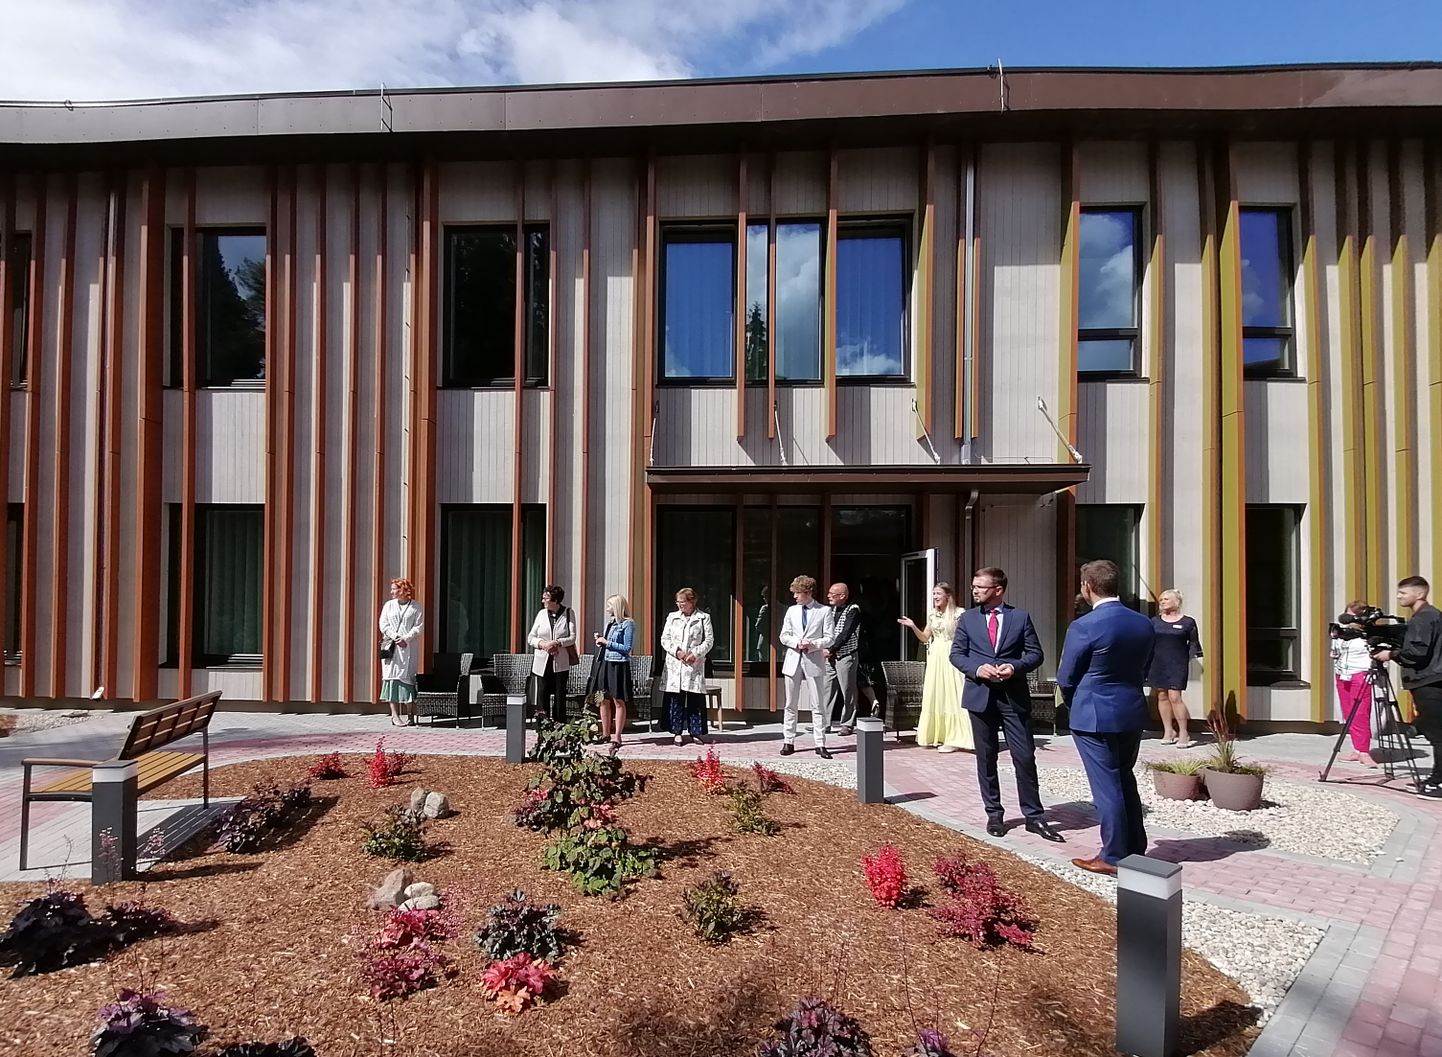 Eesti esimene spetsiaalselt dementsusega inimeste jaoks ehitatud Benita Kodu. Pildil hetk pidulikul avamispäeval toimunud ringkäigust 22. juulil 2020.